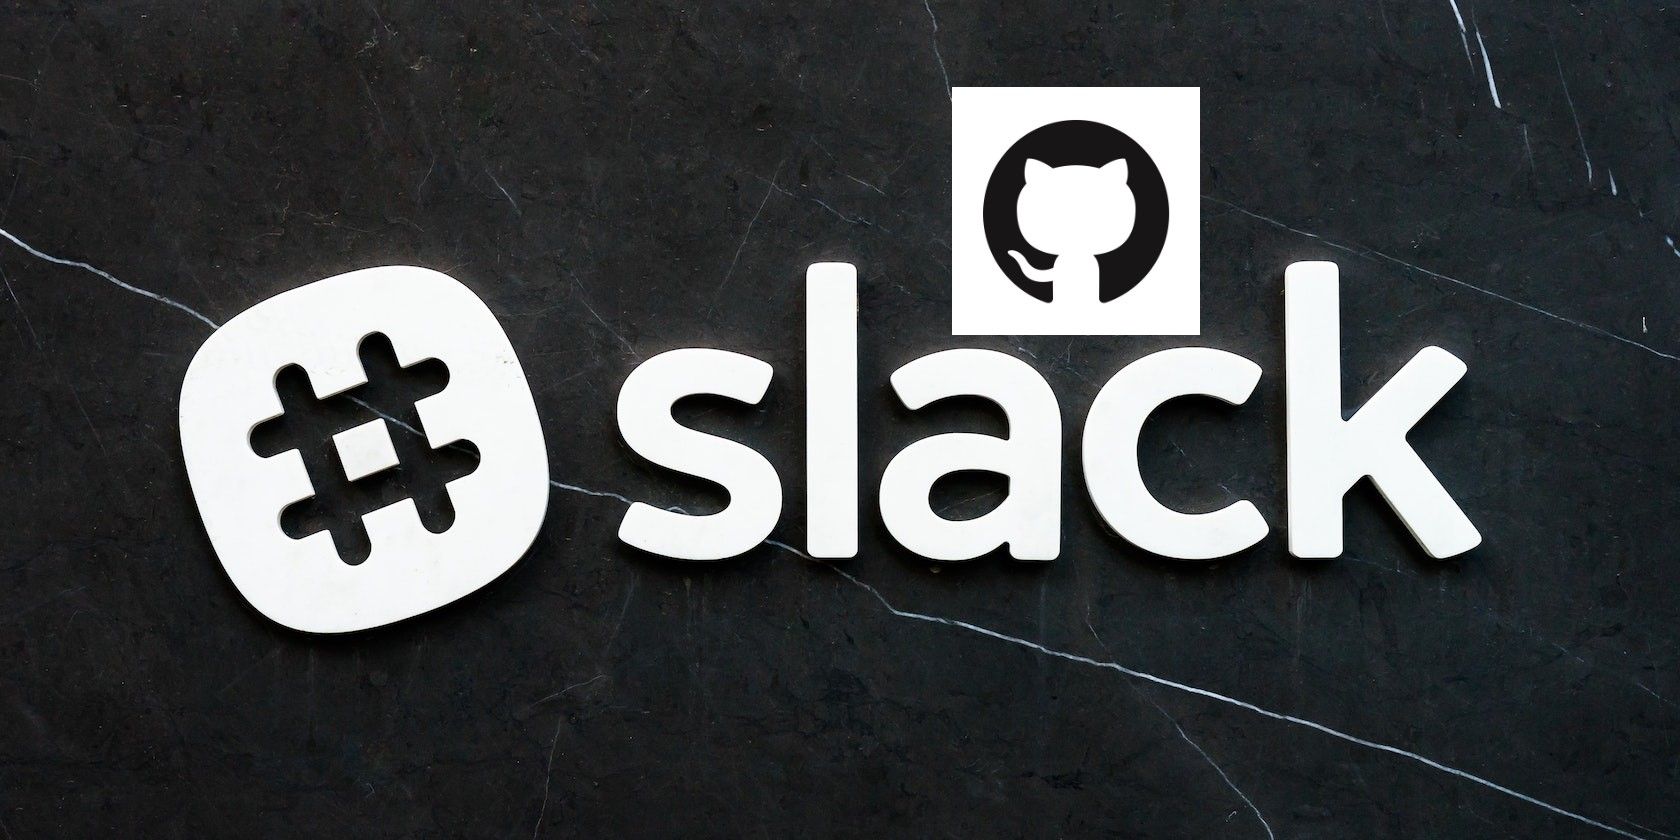 GitHub logo overlayed on an image containing the slack logo